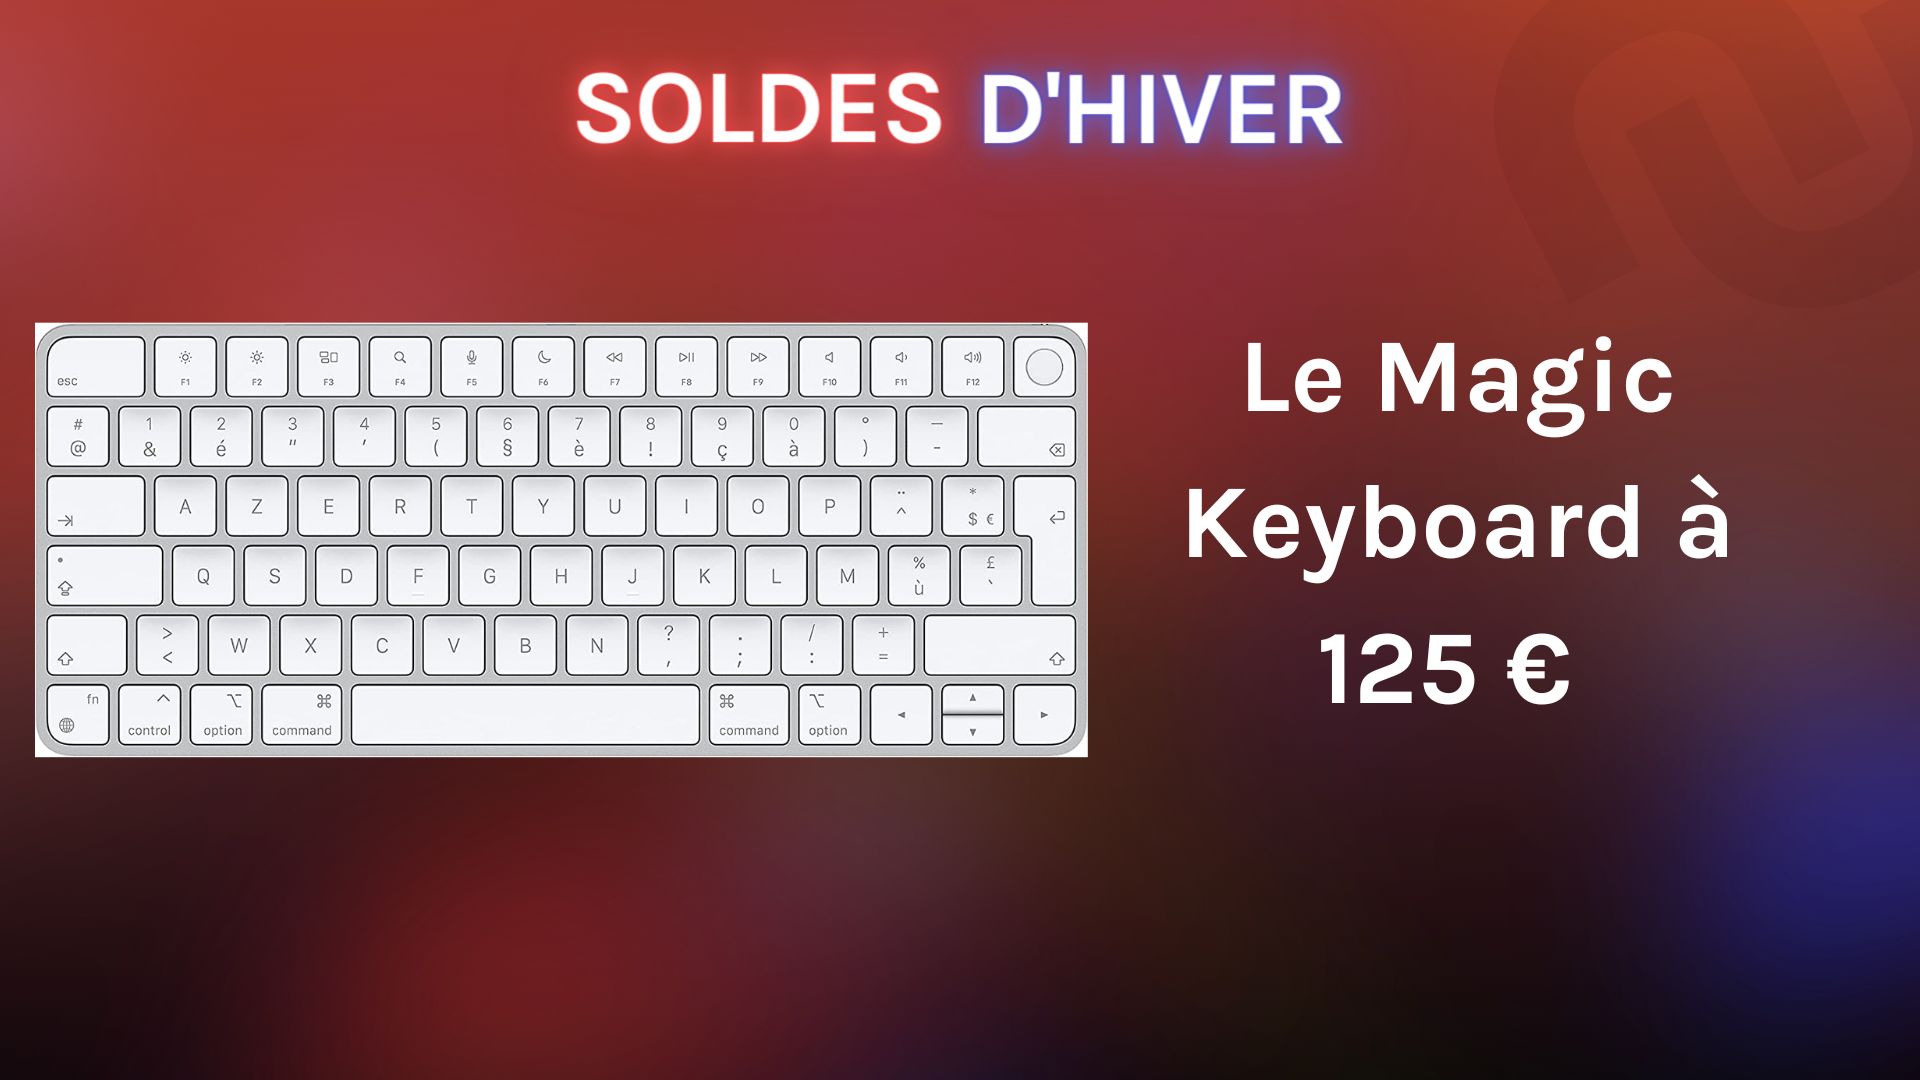 Le clavier Magic Keyboard avec Touch ID est l'accessoire qui manquait aux  Mac M1 - Numerama